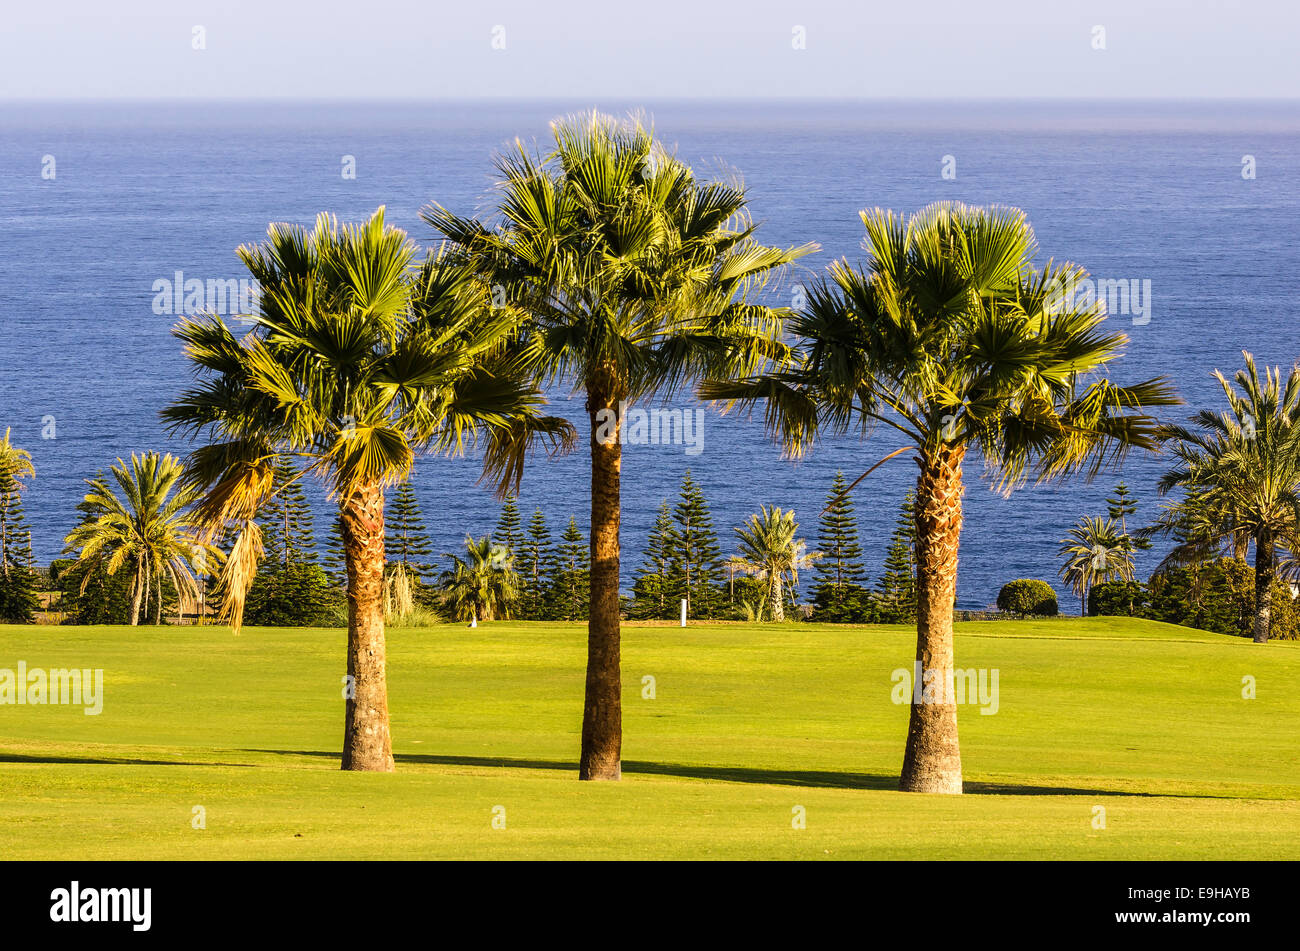 Trois palmiers sur un parcours de golf, Laguna de Santiago, La Gomera, Canary Islands, Spain Banque D'Images